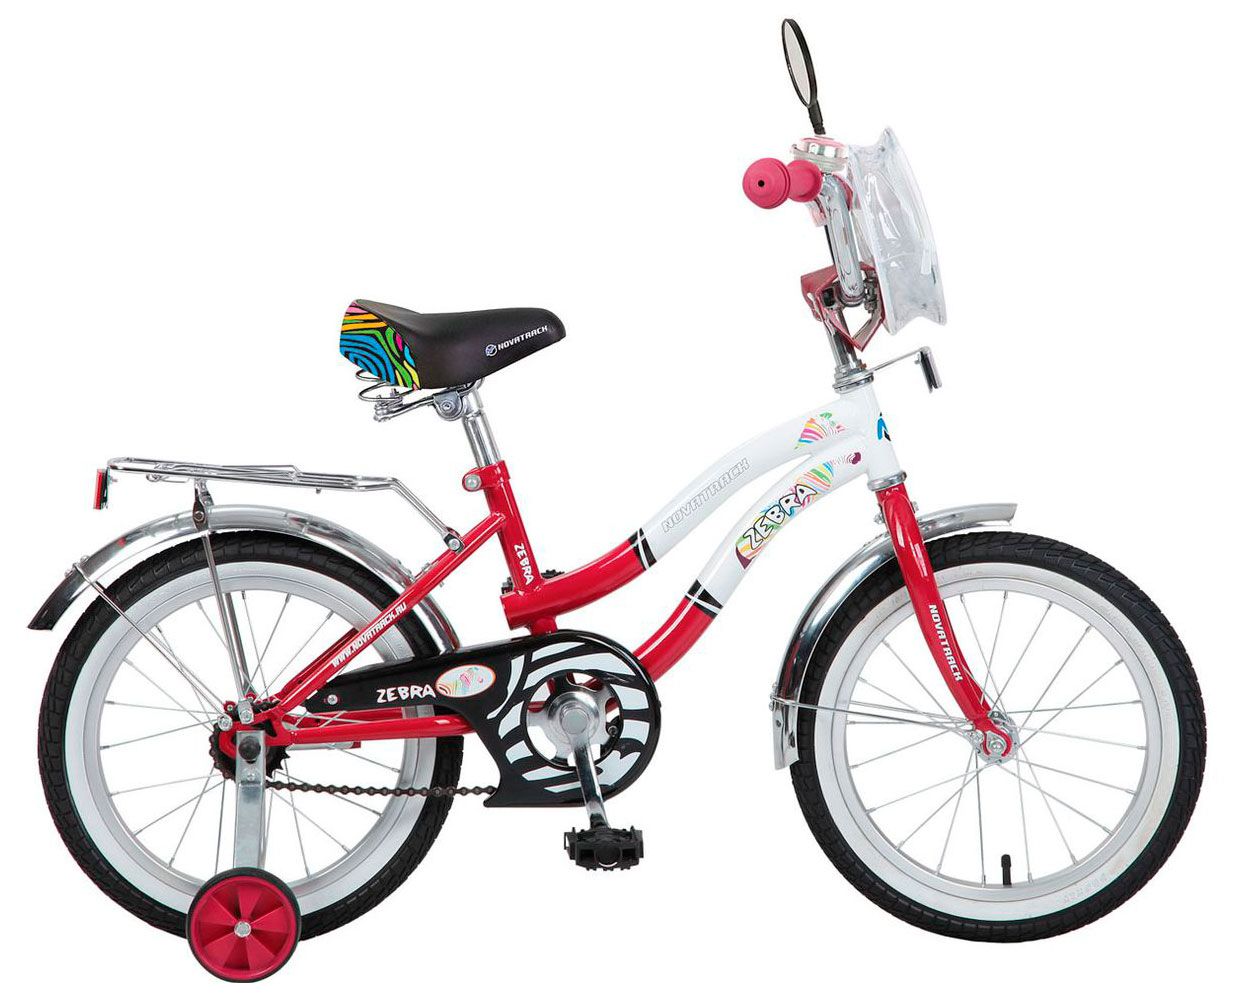  Велосипед трехколесный детский велосипед Novatrack Zebra 16 2016